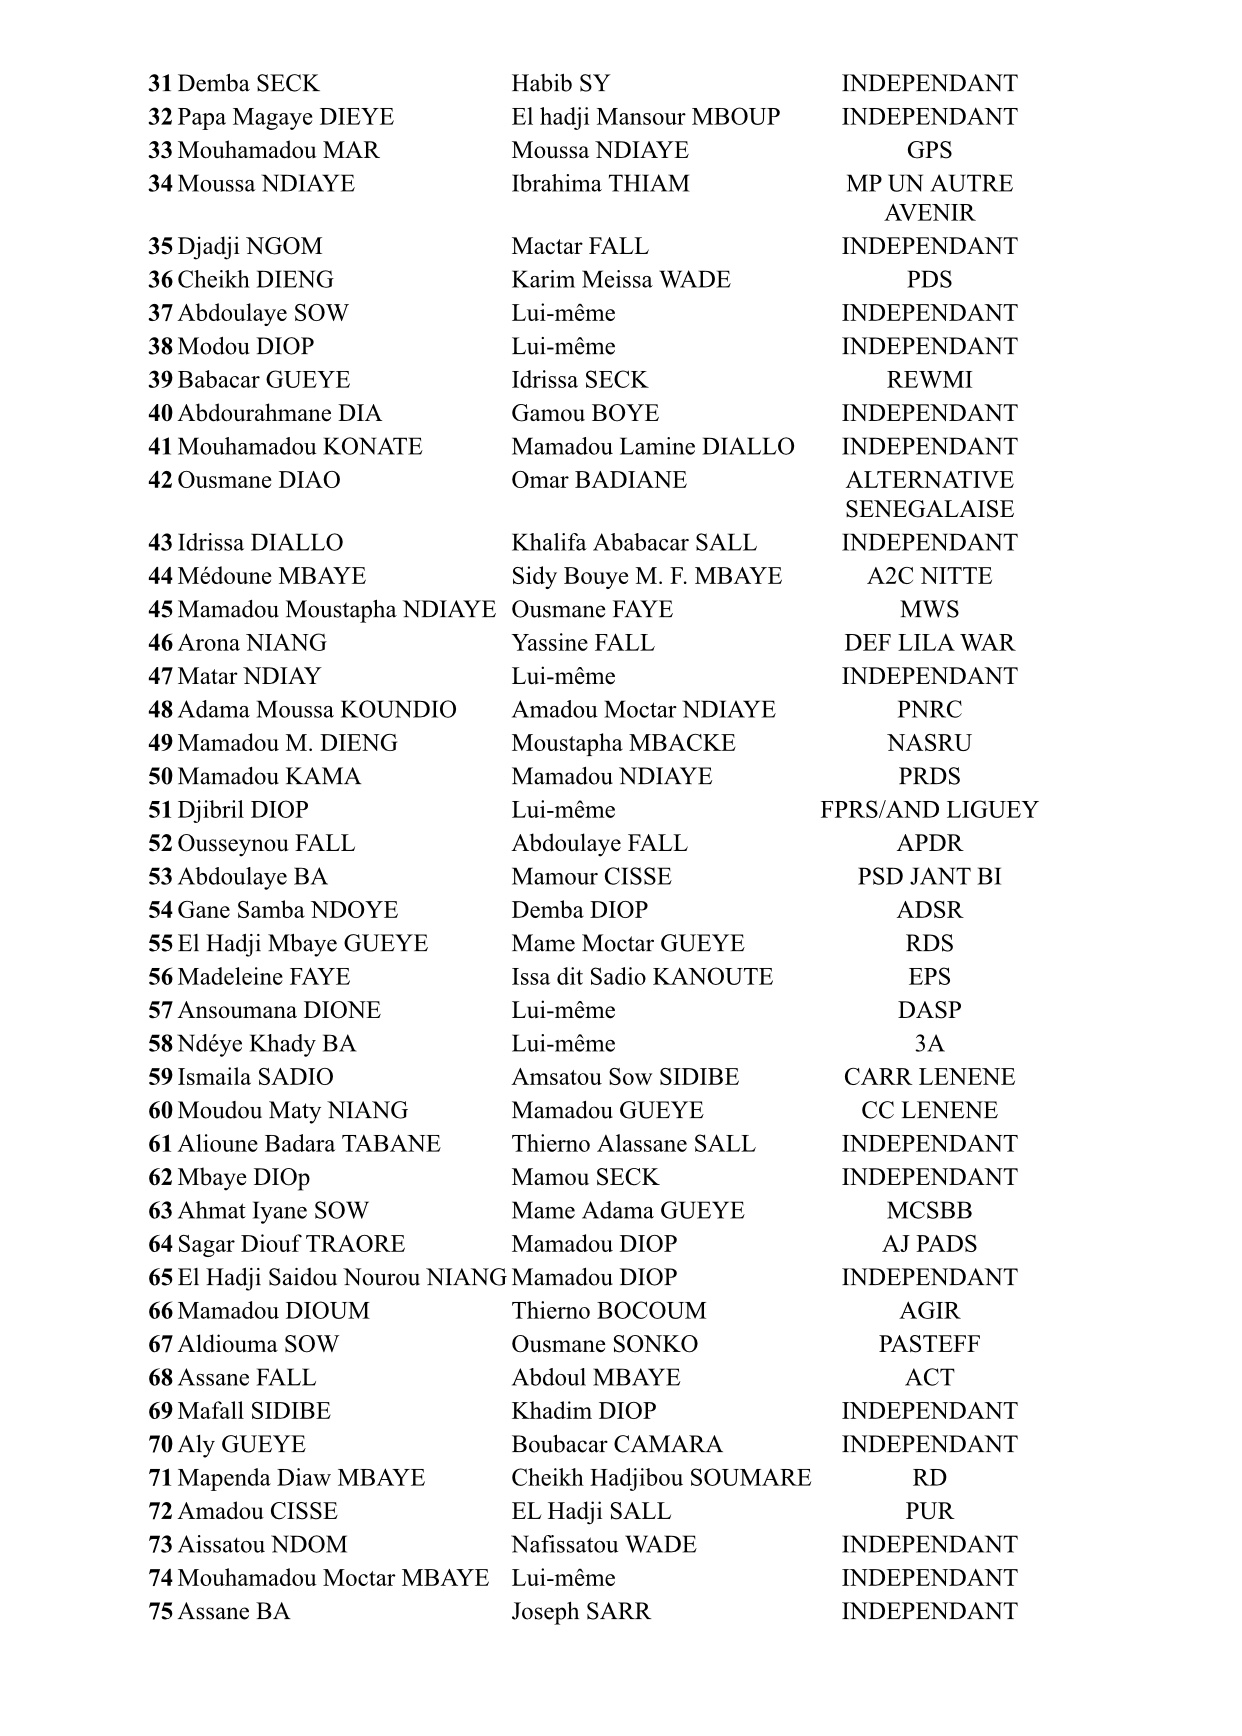 Élection présidentielle du 24 février 2019 : La liste des Coordinateurs ayant retirés les supports de parrainage (DOCUMENT)